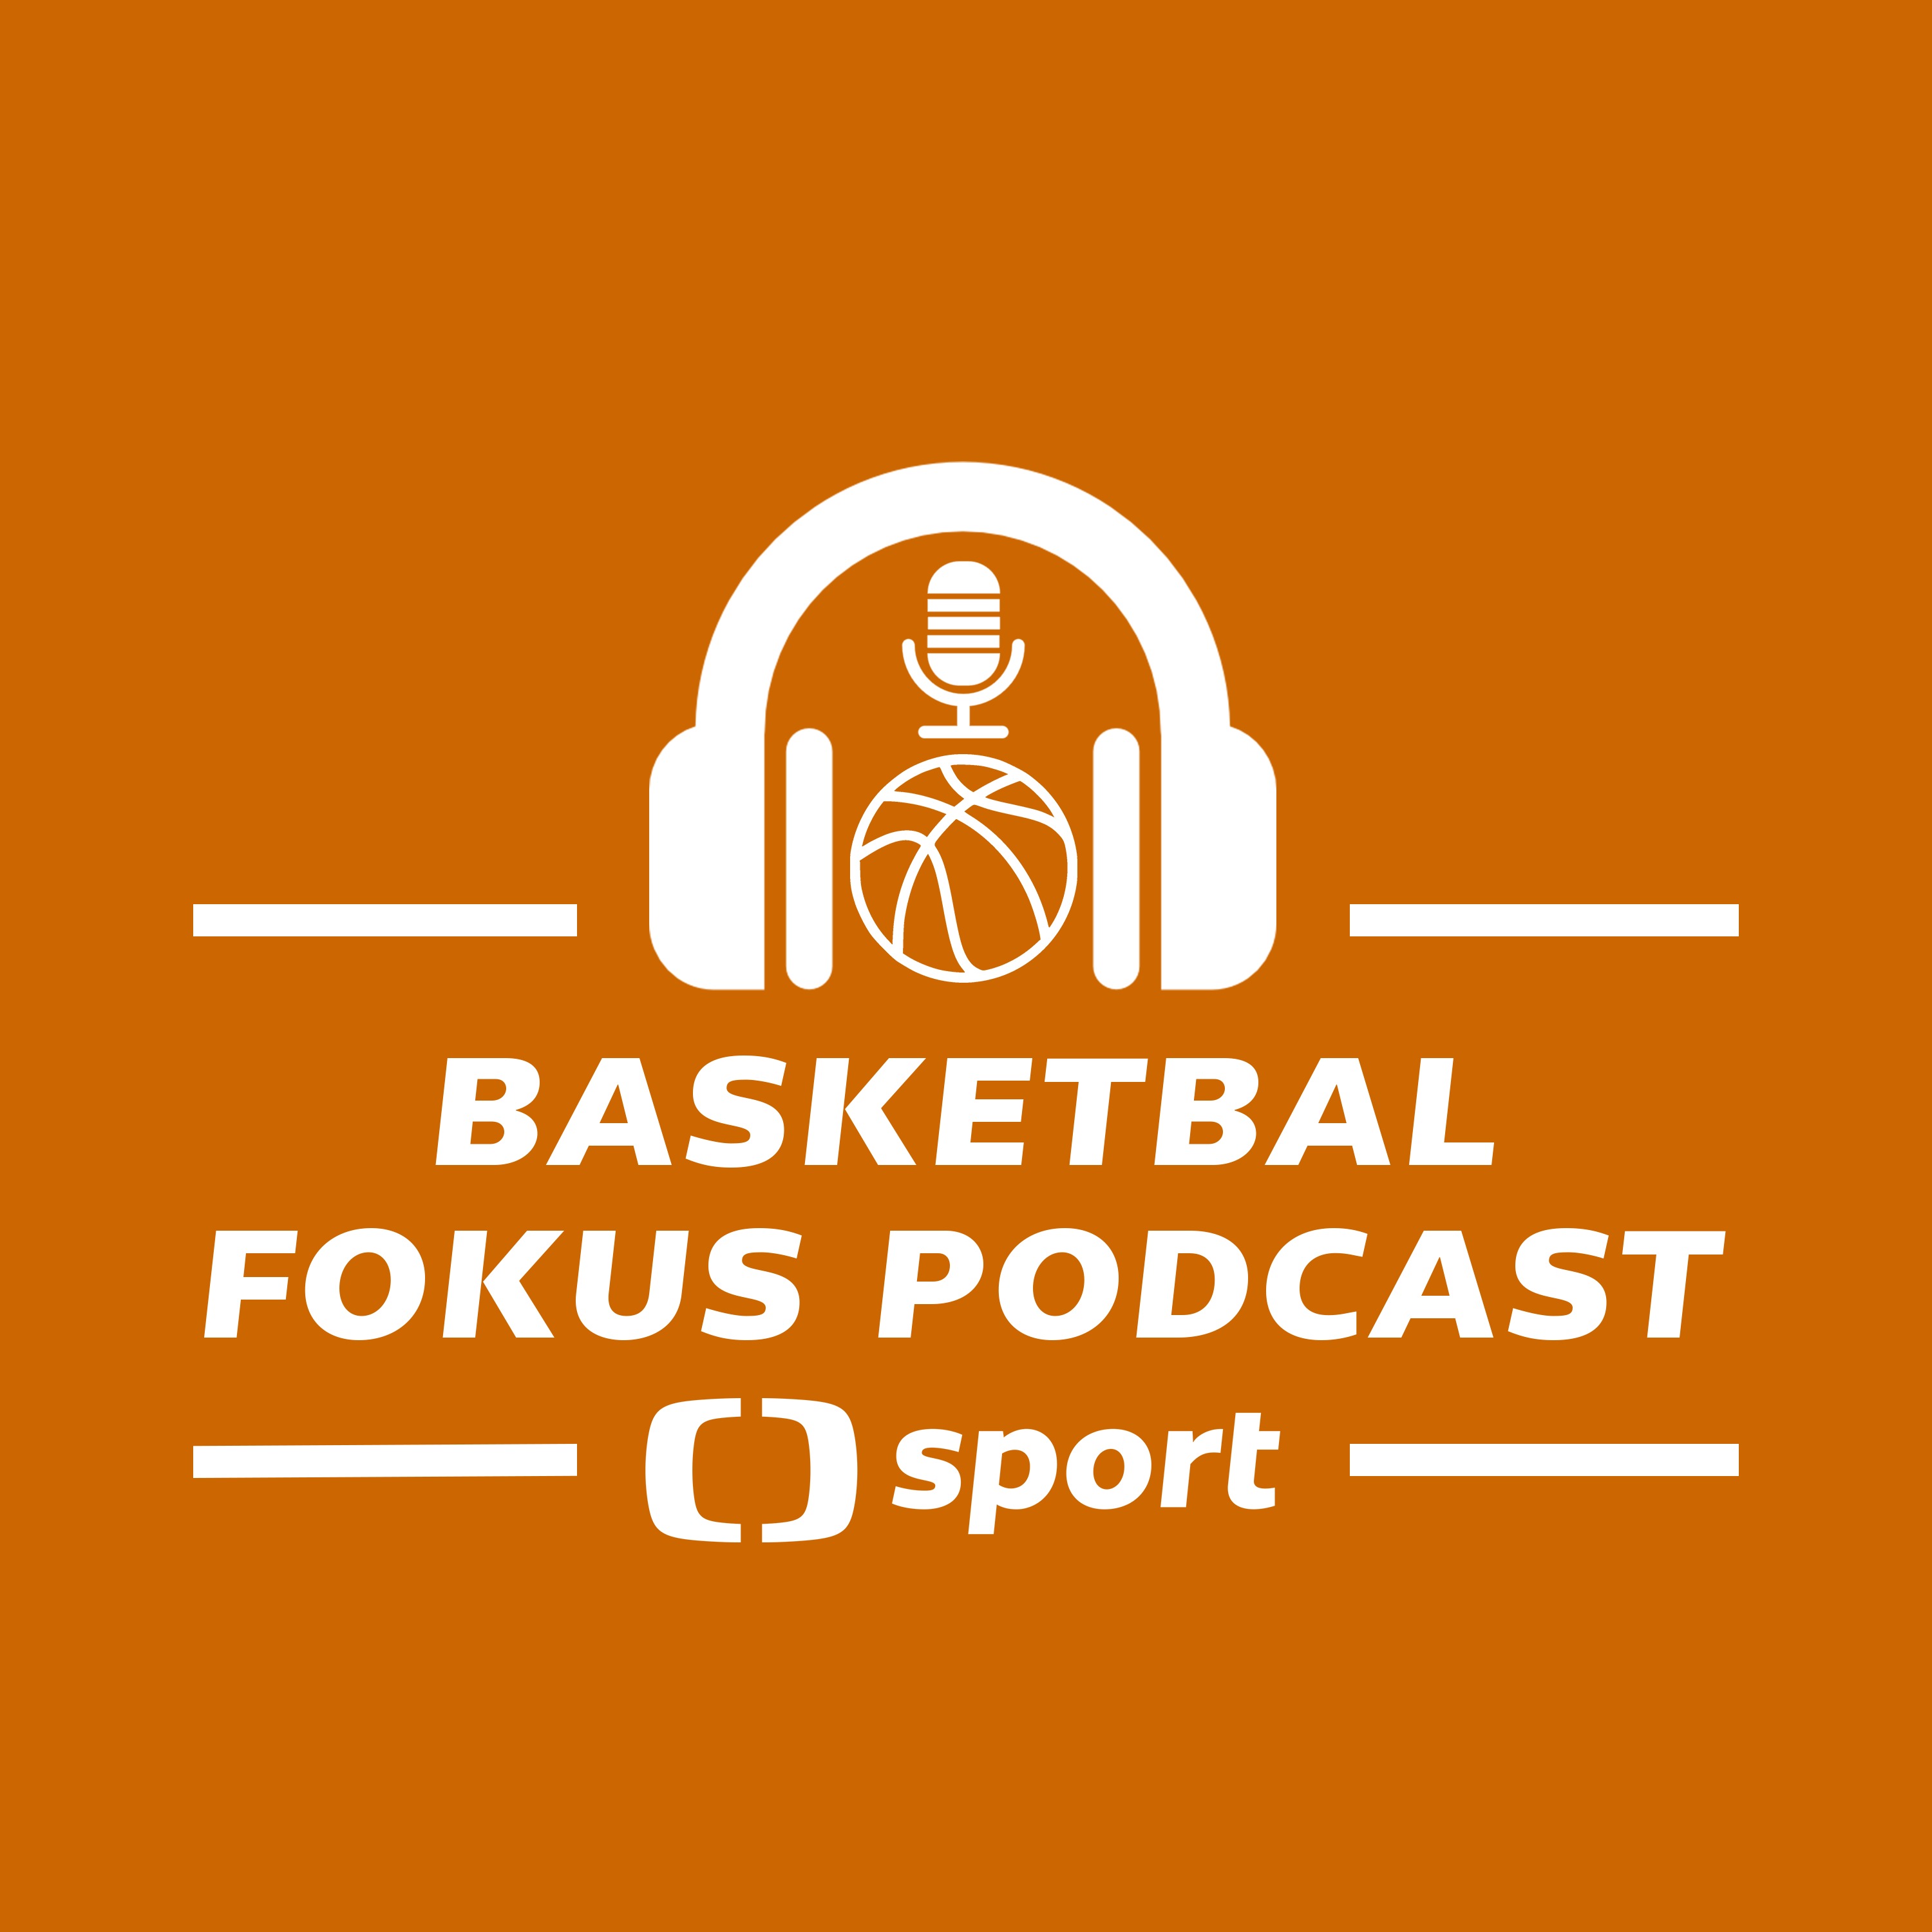 Basketbal fokus podcast: Co přinese klubům a fanouškům nová domácí sezona NBL?